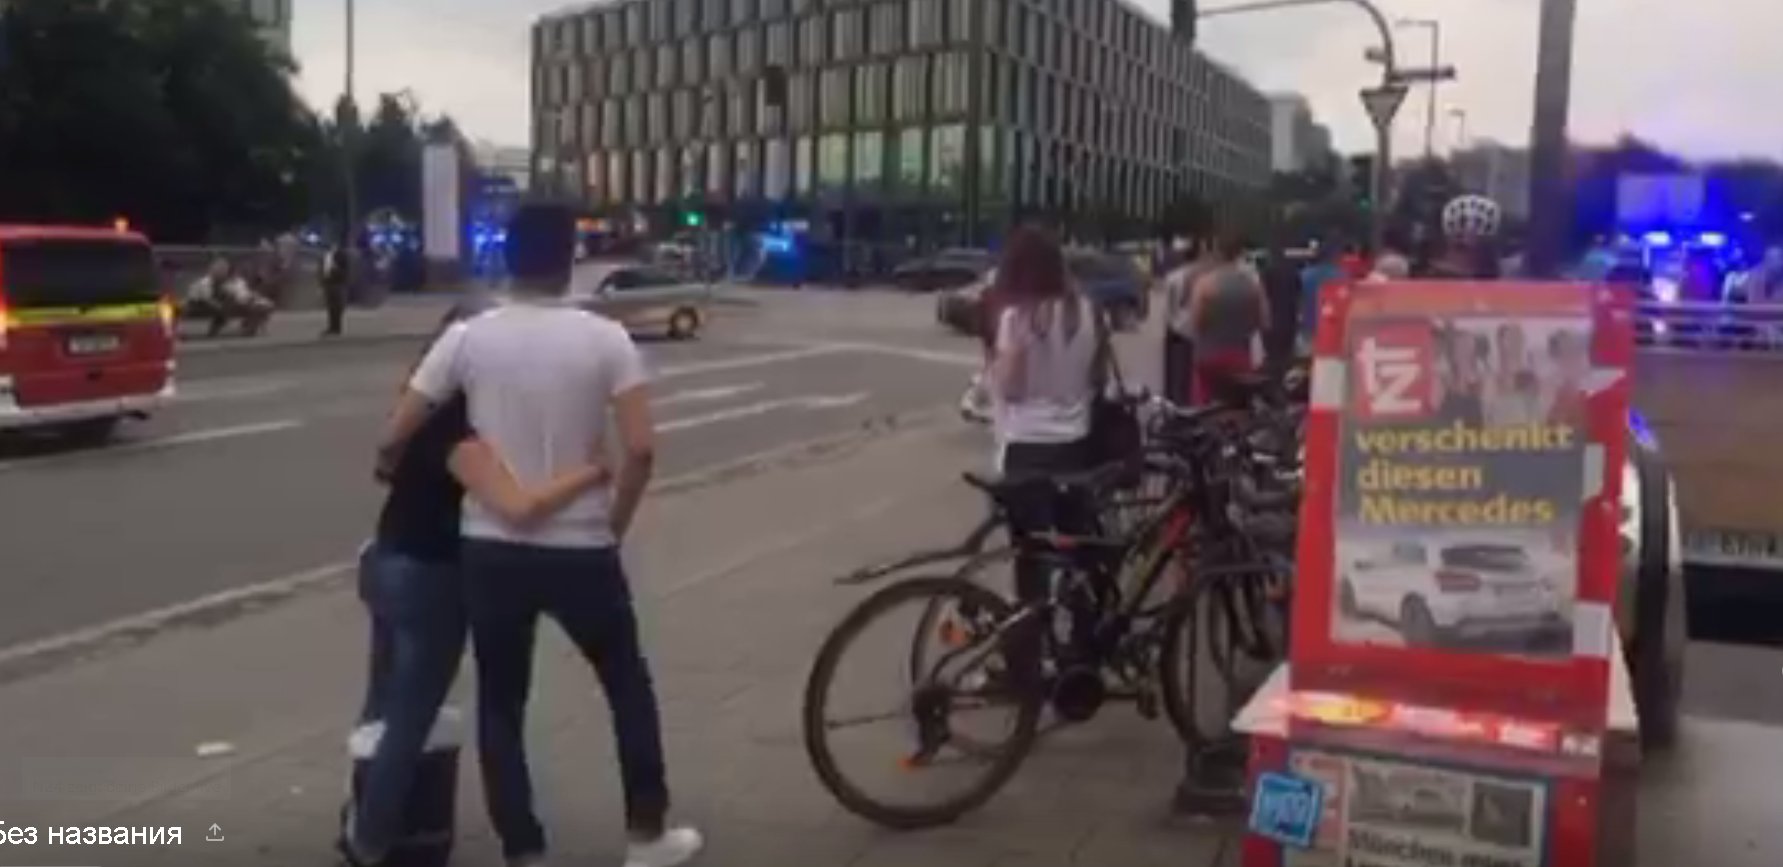 ÚLTIMA HORA Alemania: Varios muertos por tiroteo en centro comercial de Munich